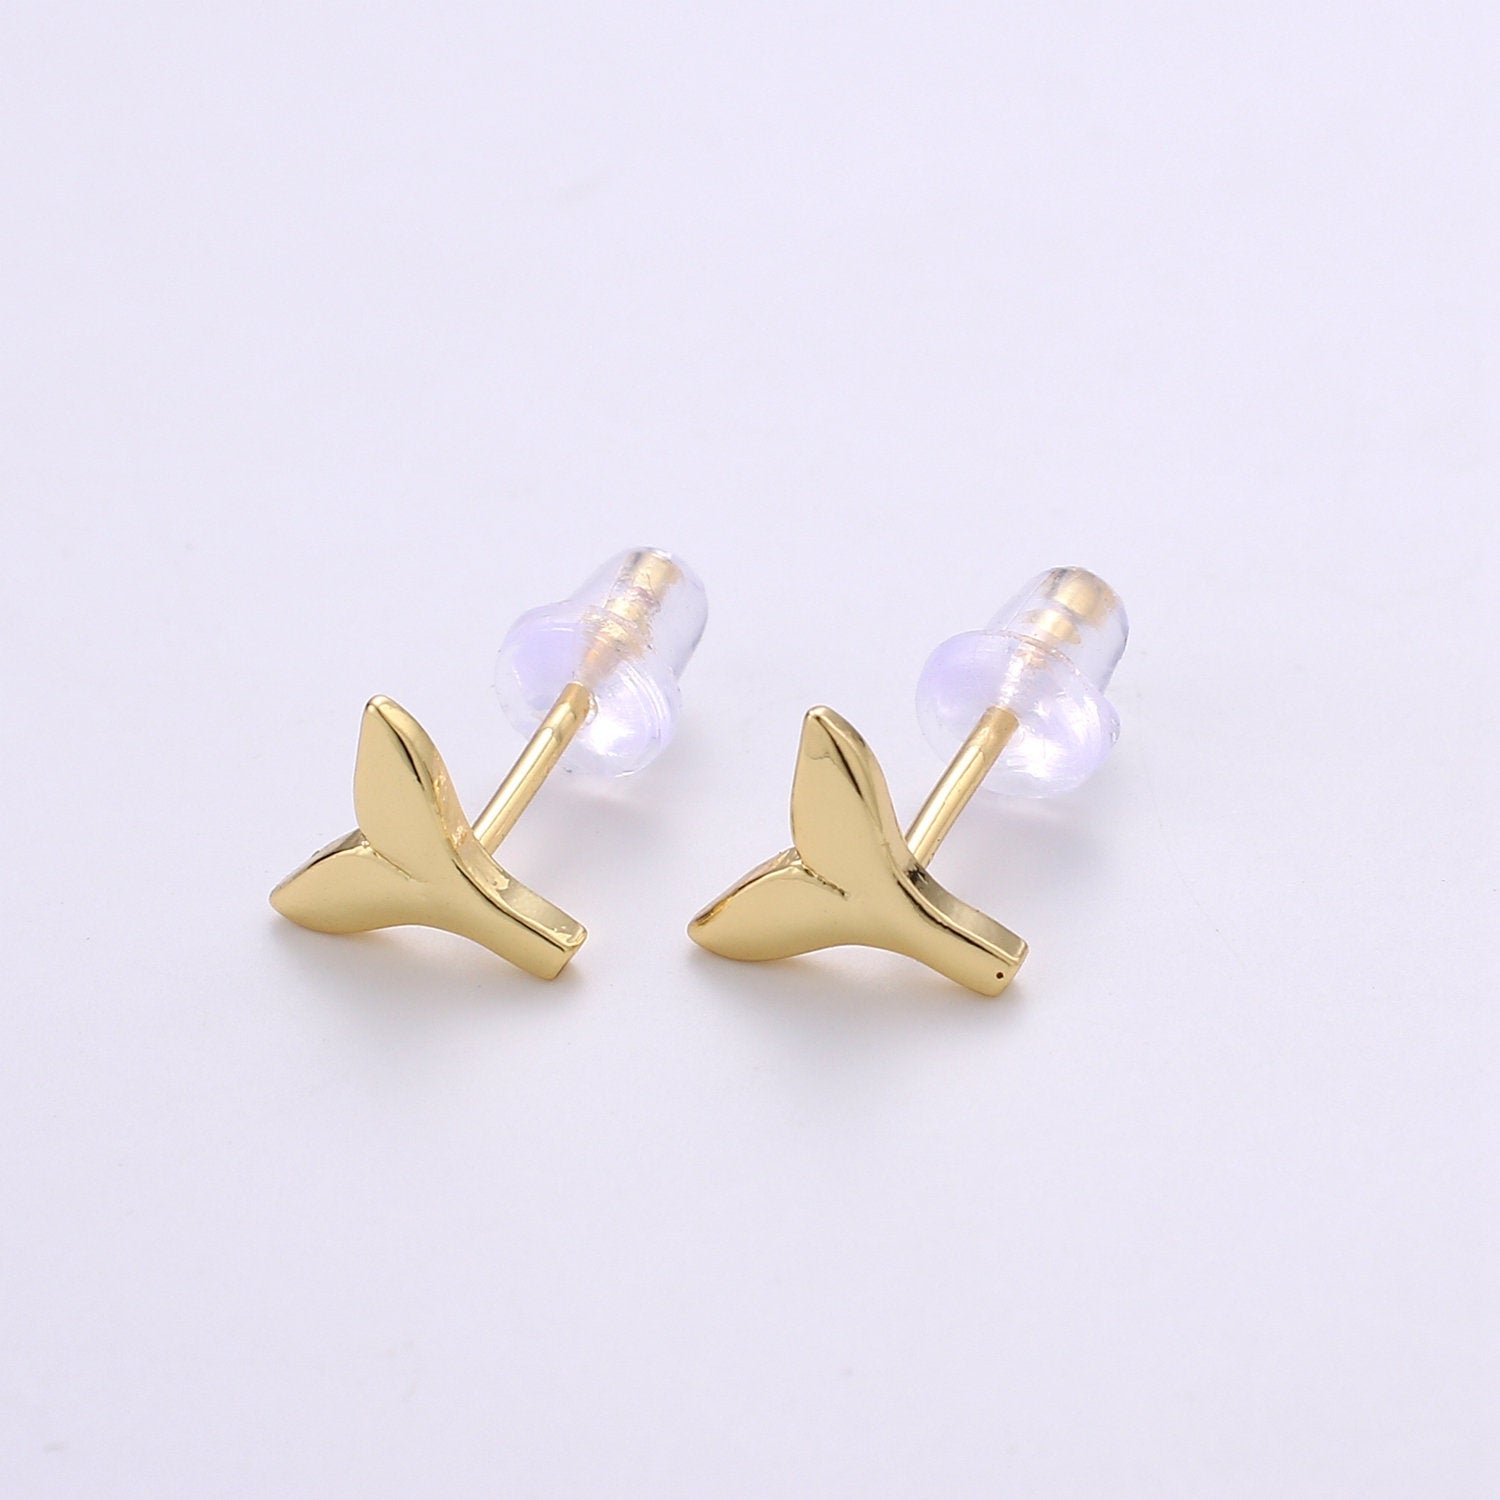 Dainty Whale Tail Stud Earring, Gold Fish Earring, Dainty Mermaid Earrings, Animal Studs, Minimalist Stud Earrings, Cartilage Earrings - DLUXCA